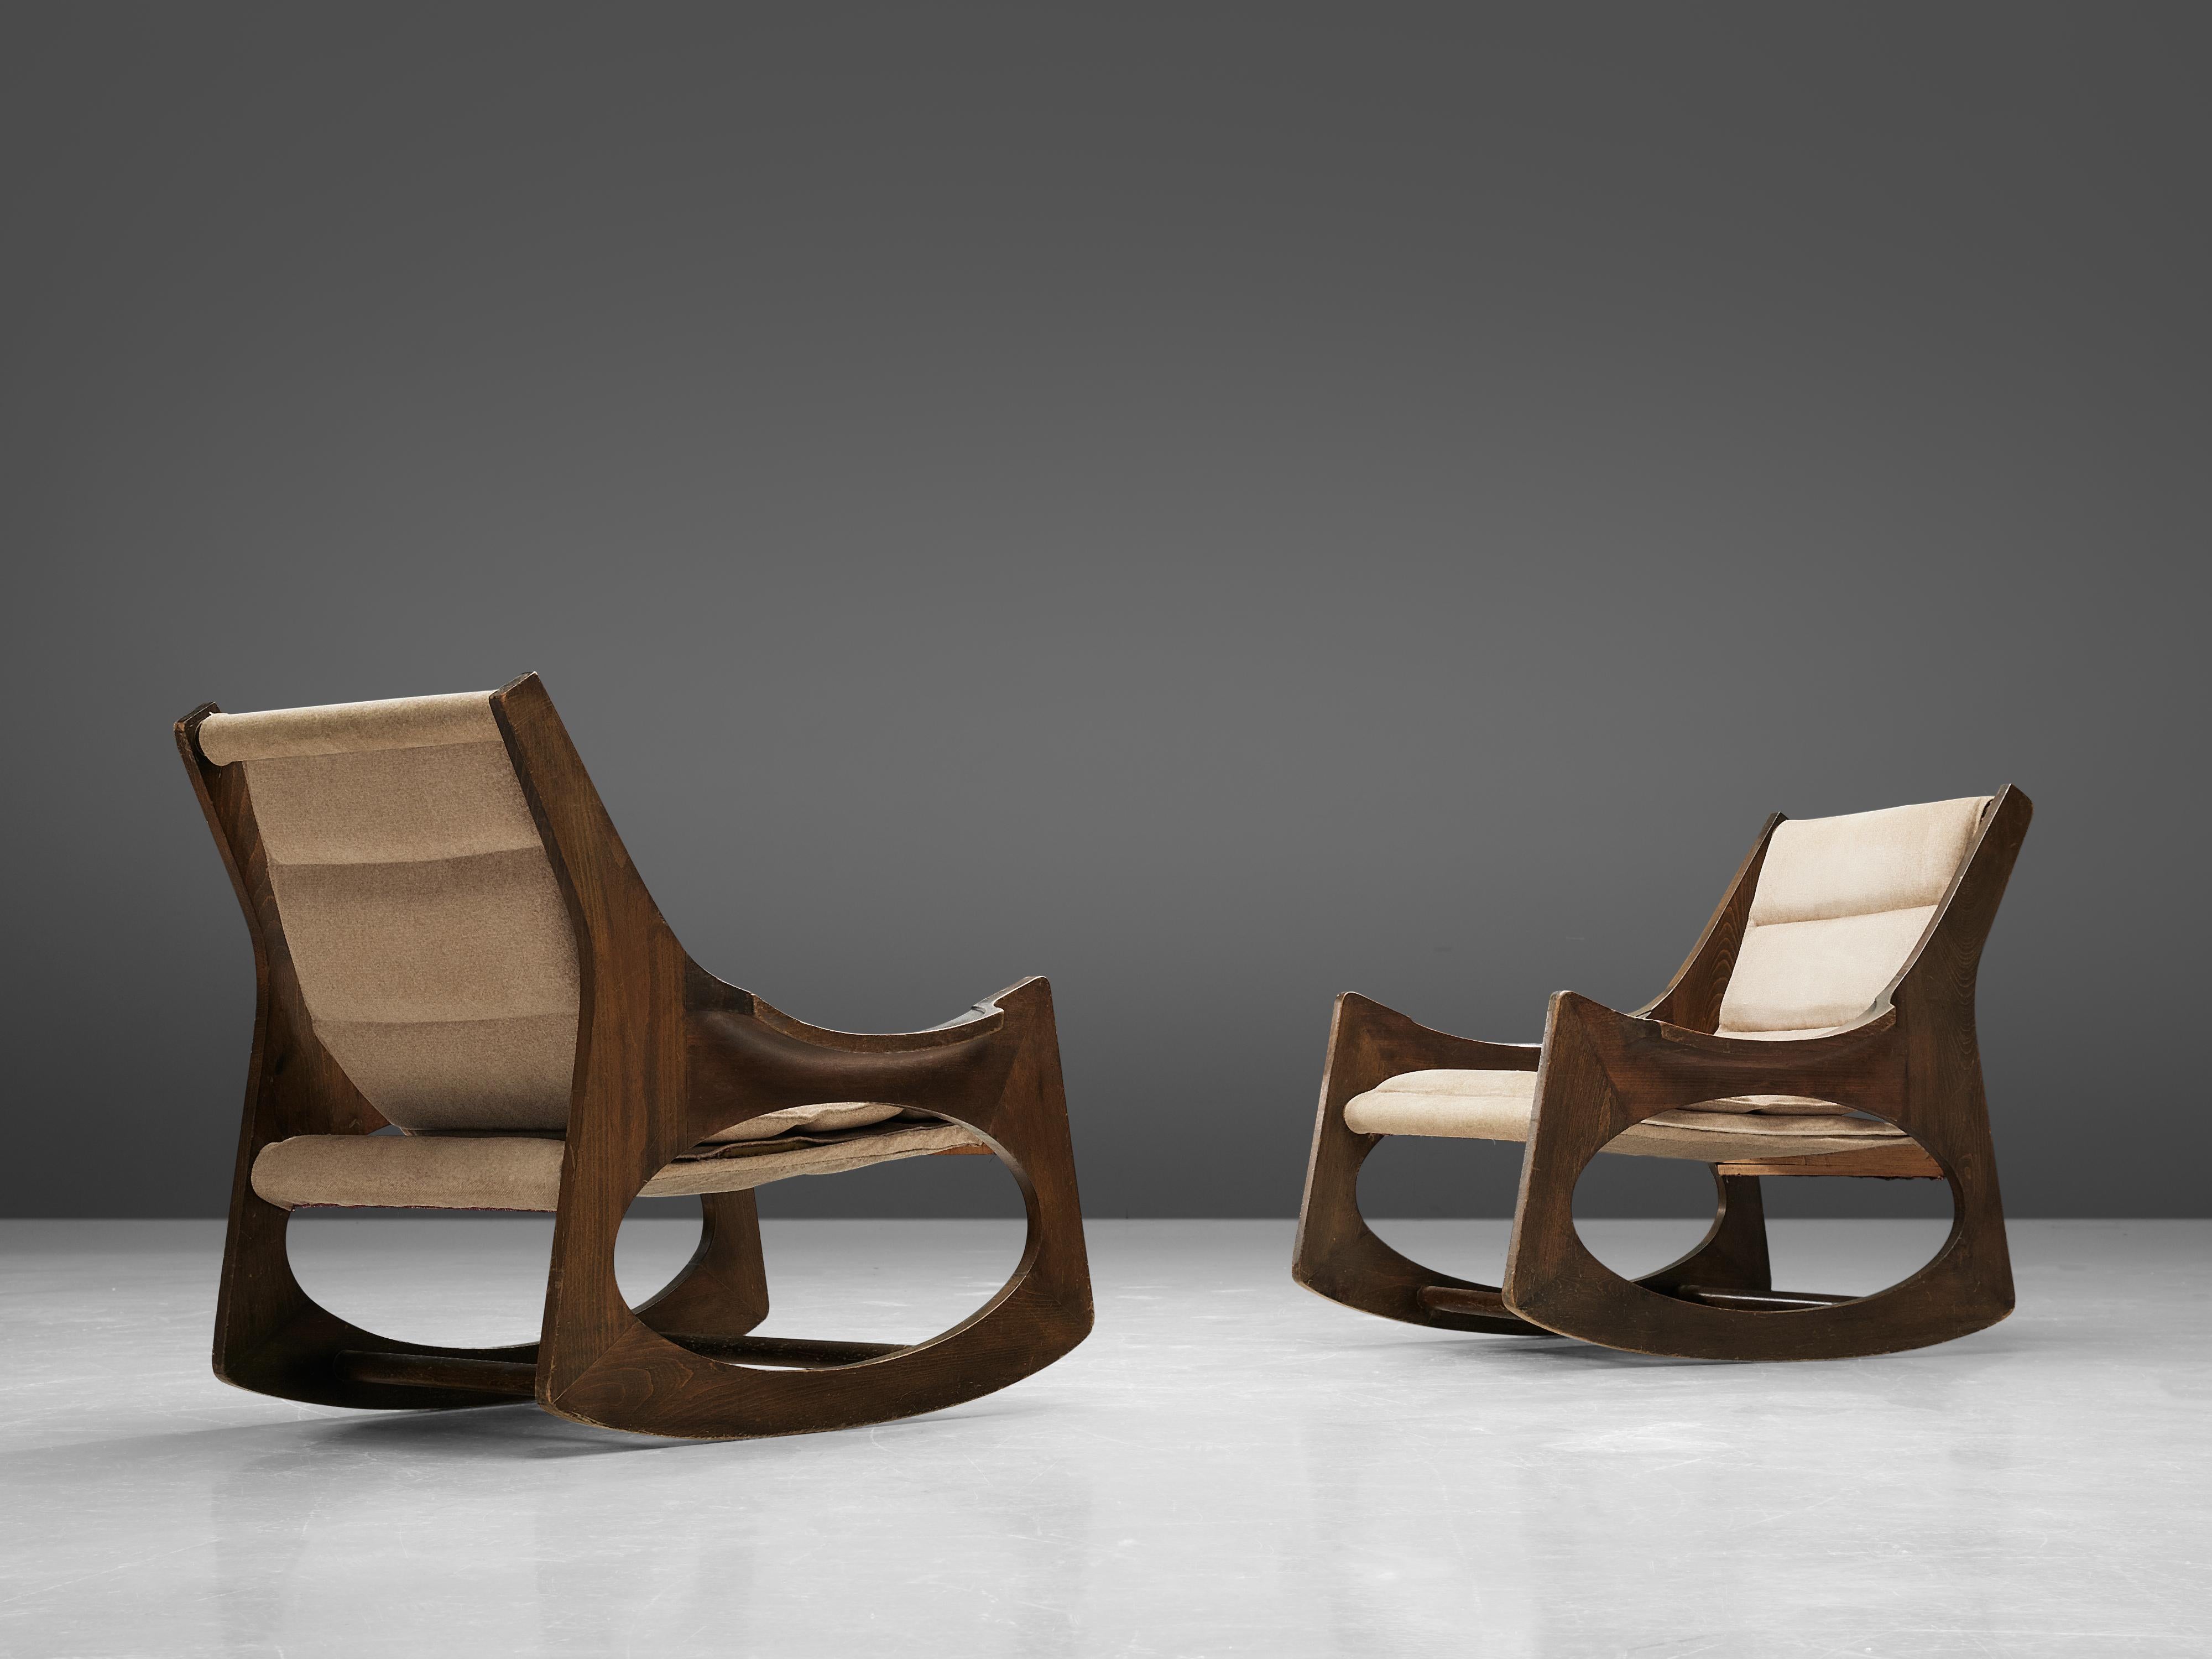 Jordi Vilanova i Bosch, 'paire de chaises à bascule Tartera', buis, hêtre et tissu, Espagne, design 1966, fabrication années 1960.

Ces deux merveilleuses chaises à bascule sont composées de deux pièces latérales symétriques, qui intègrent la